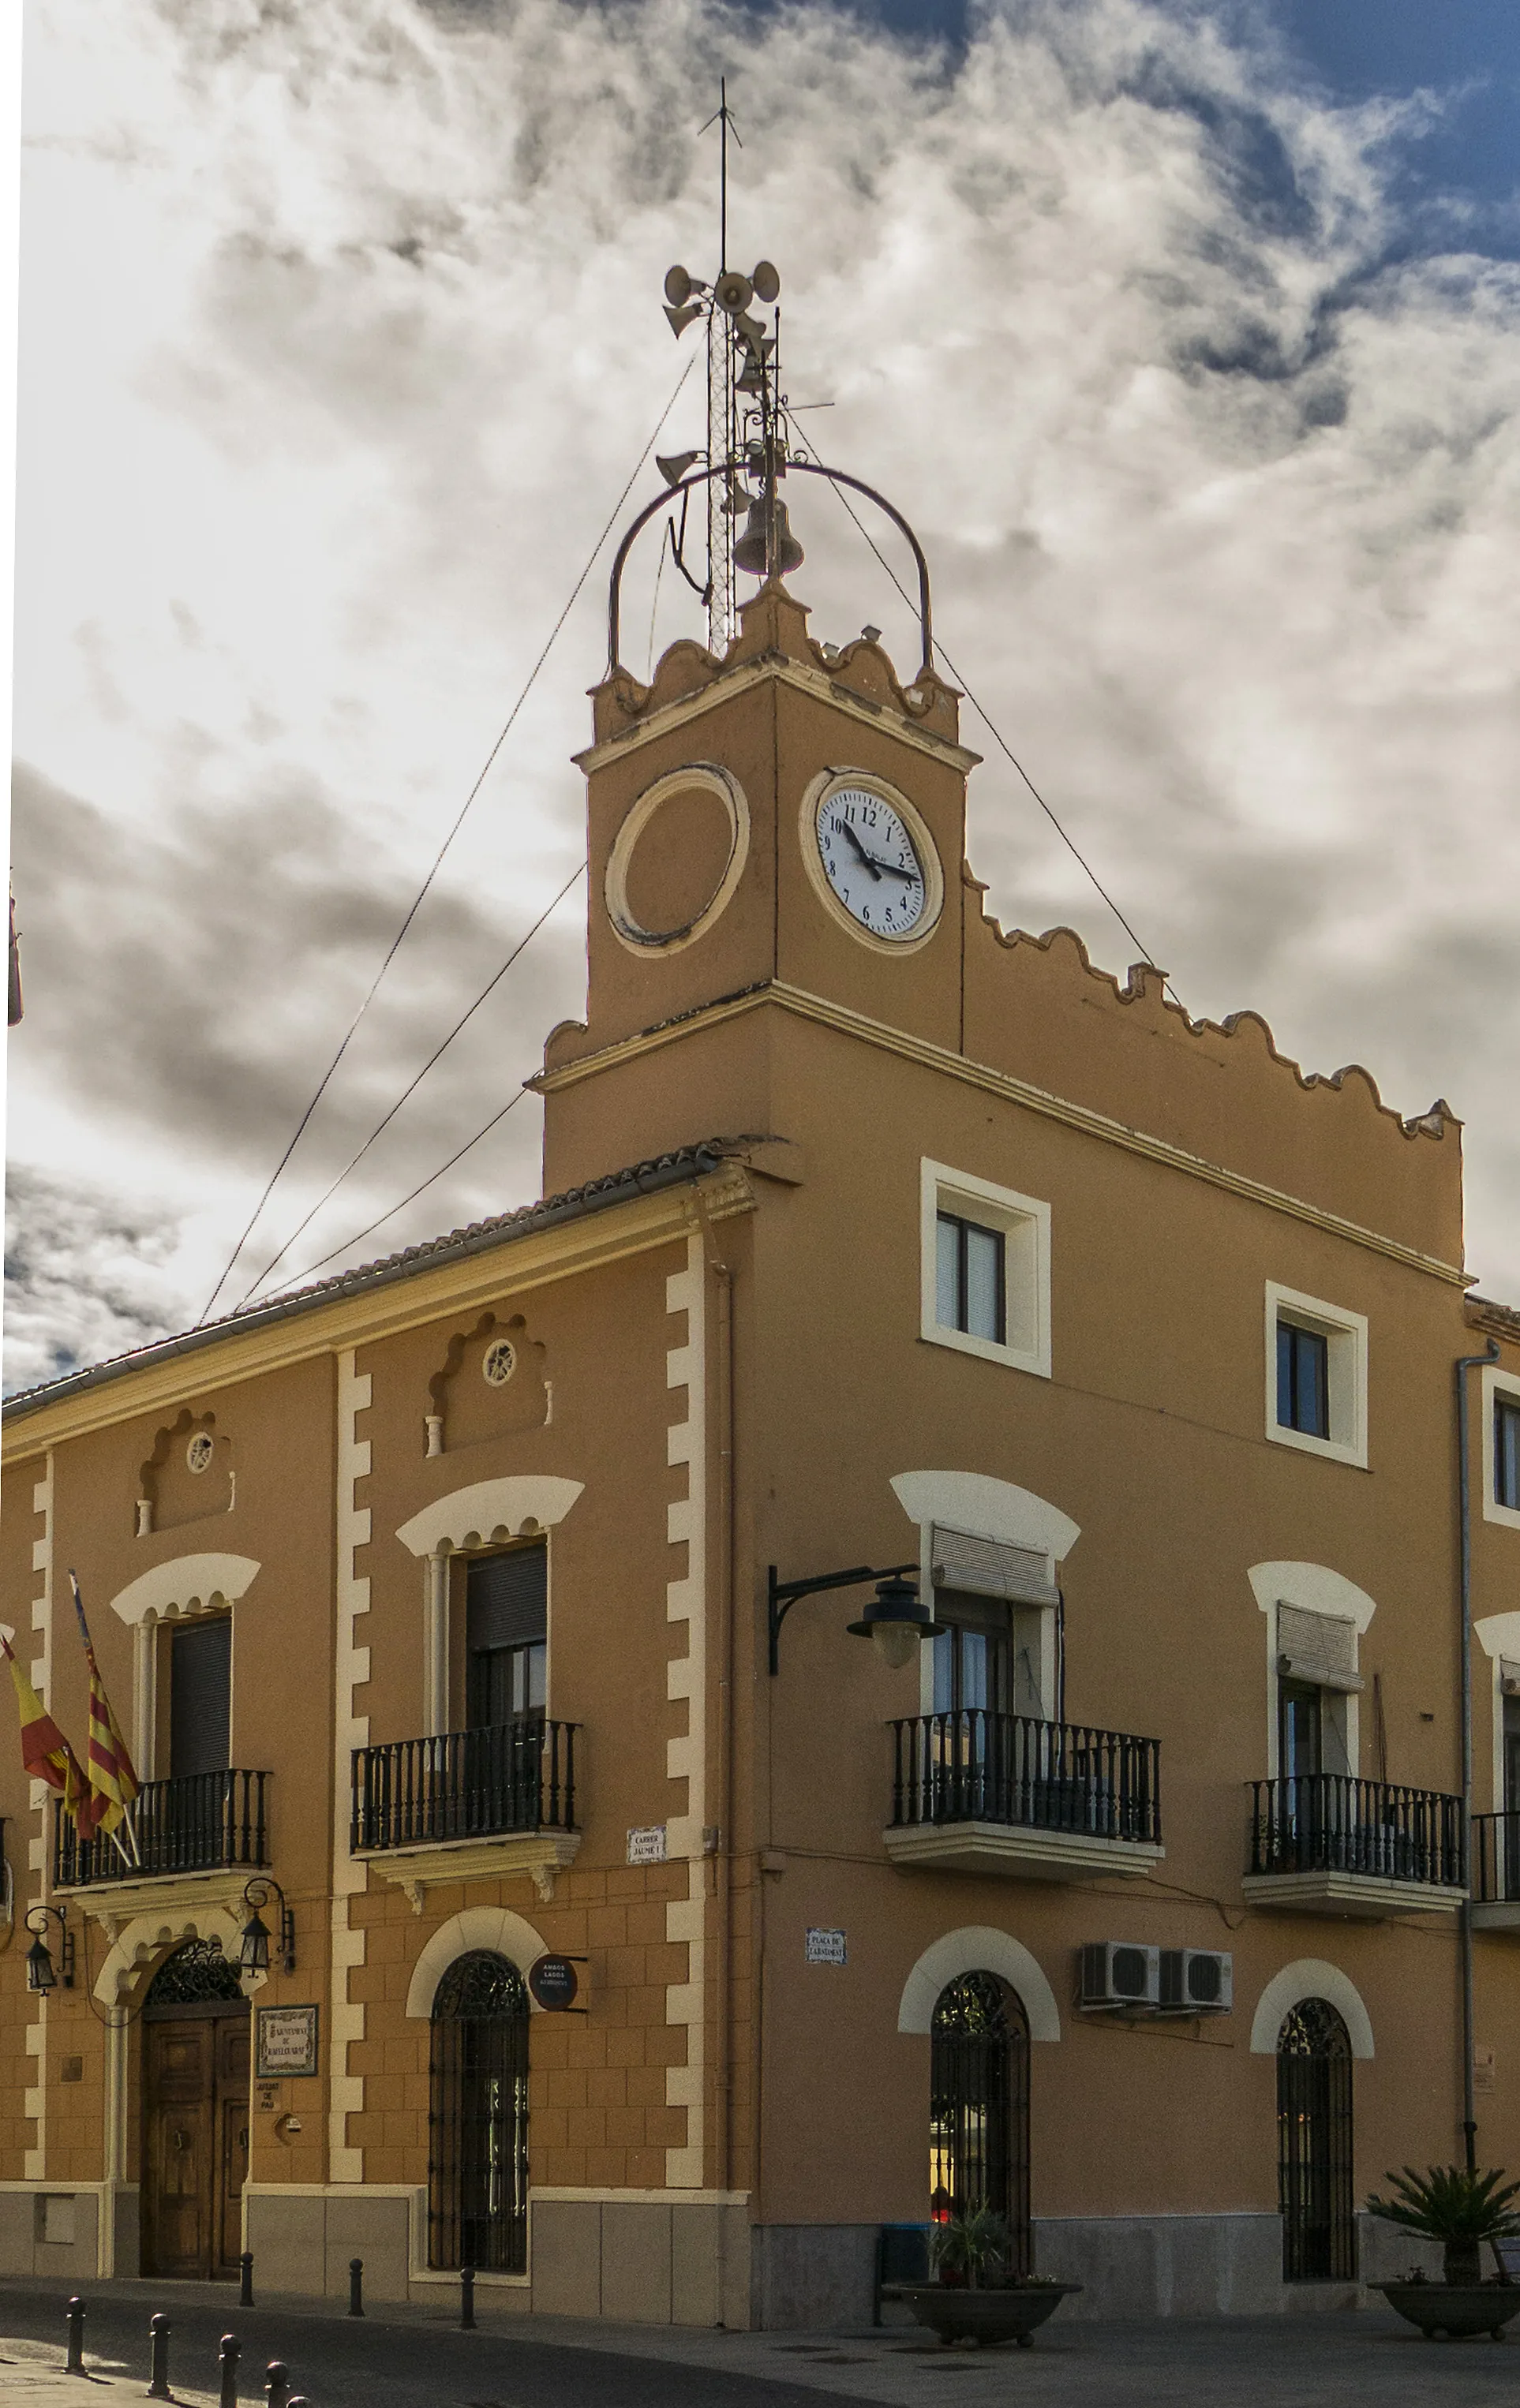 Photo showing: Rafelguaraf és un municipi del País Valencià situat a la comarca de la Ribera Alta.
Aquesta fotografia ha sigut publicada per:

L'ajuntament de Rafelguaraf Consulta 20-març-2021.